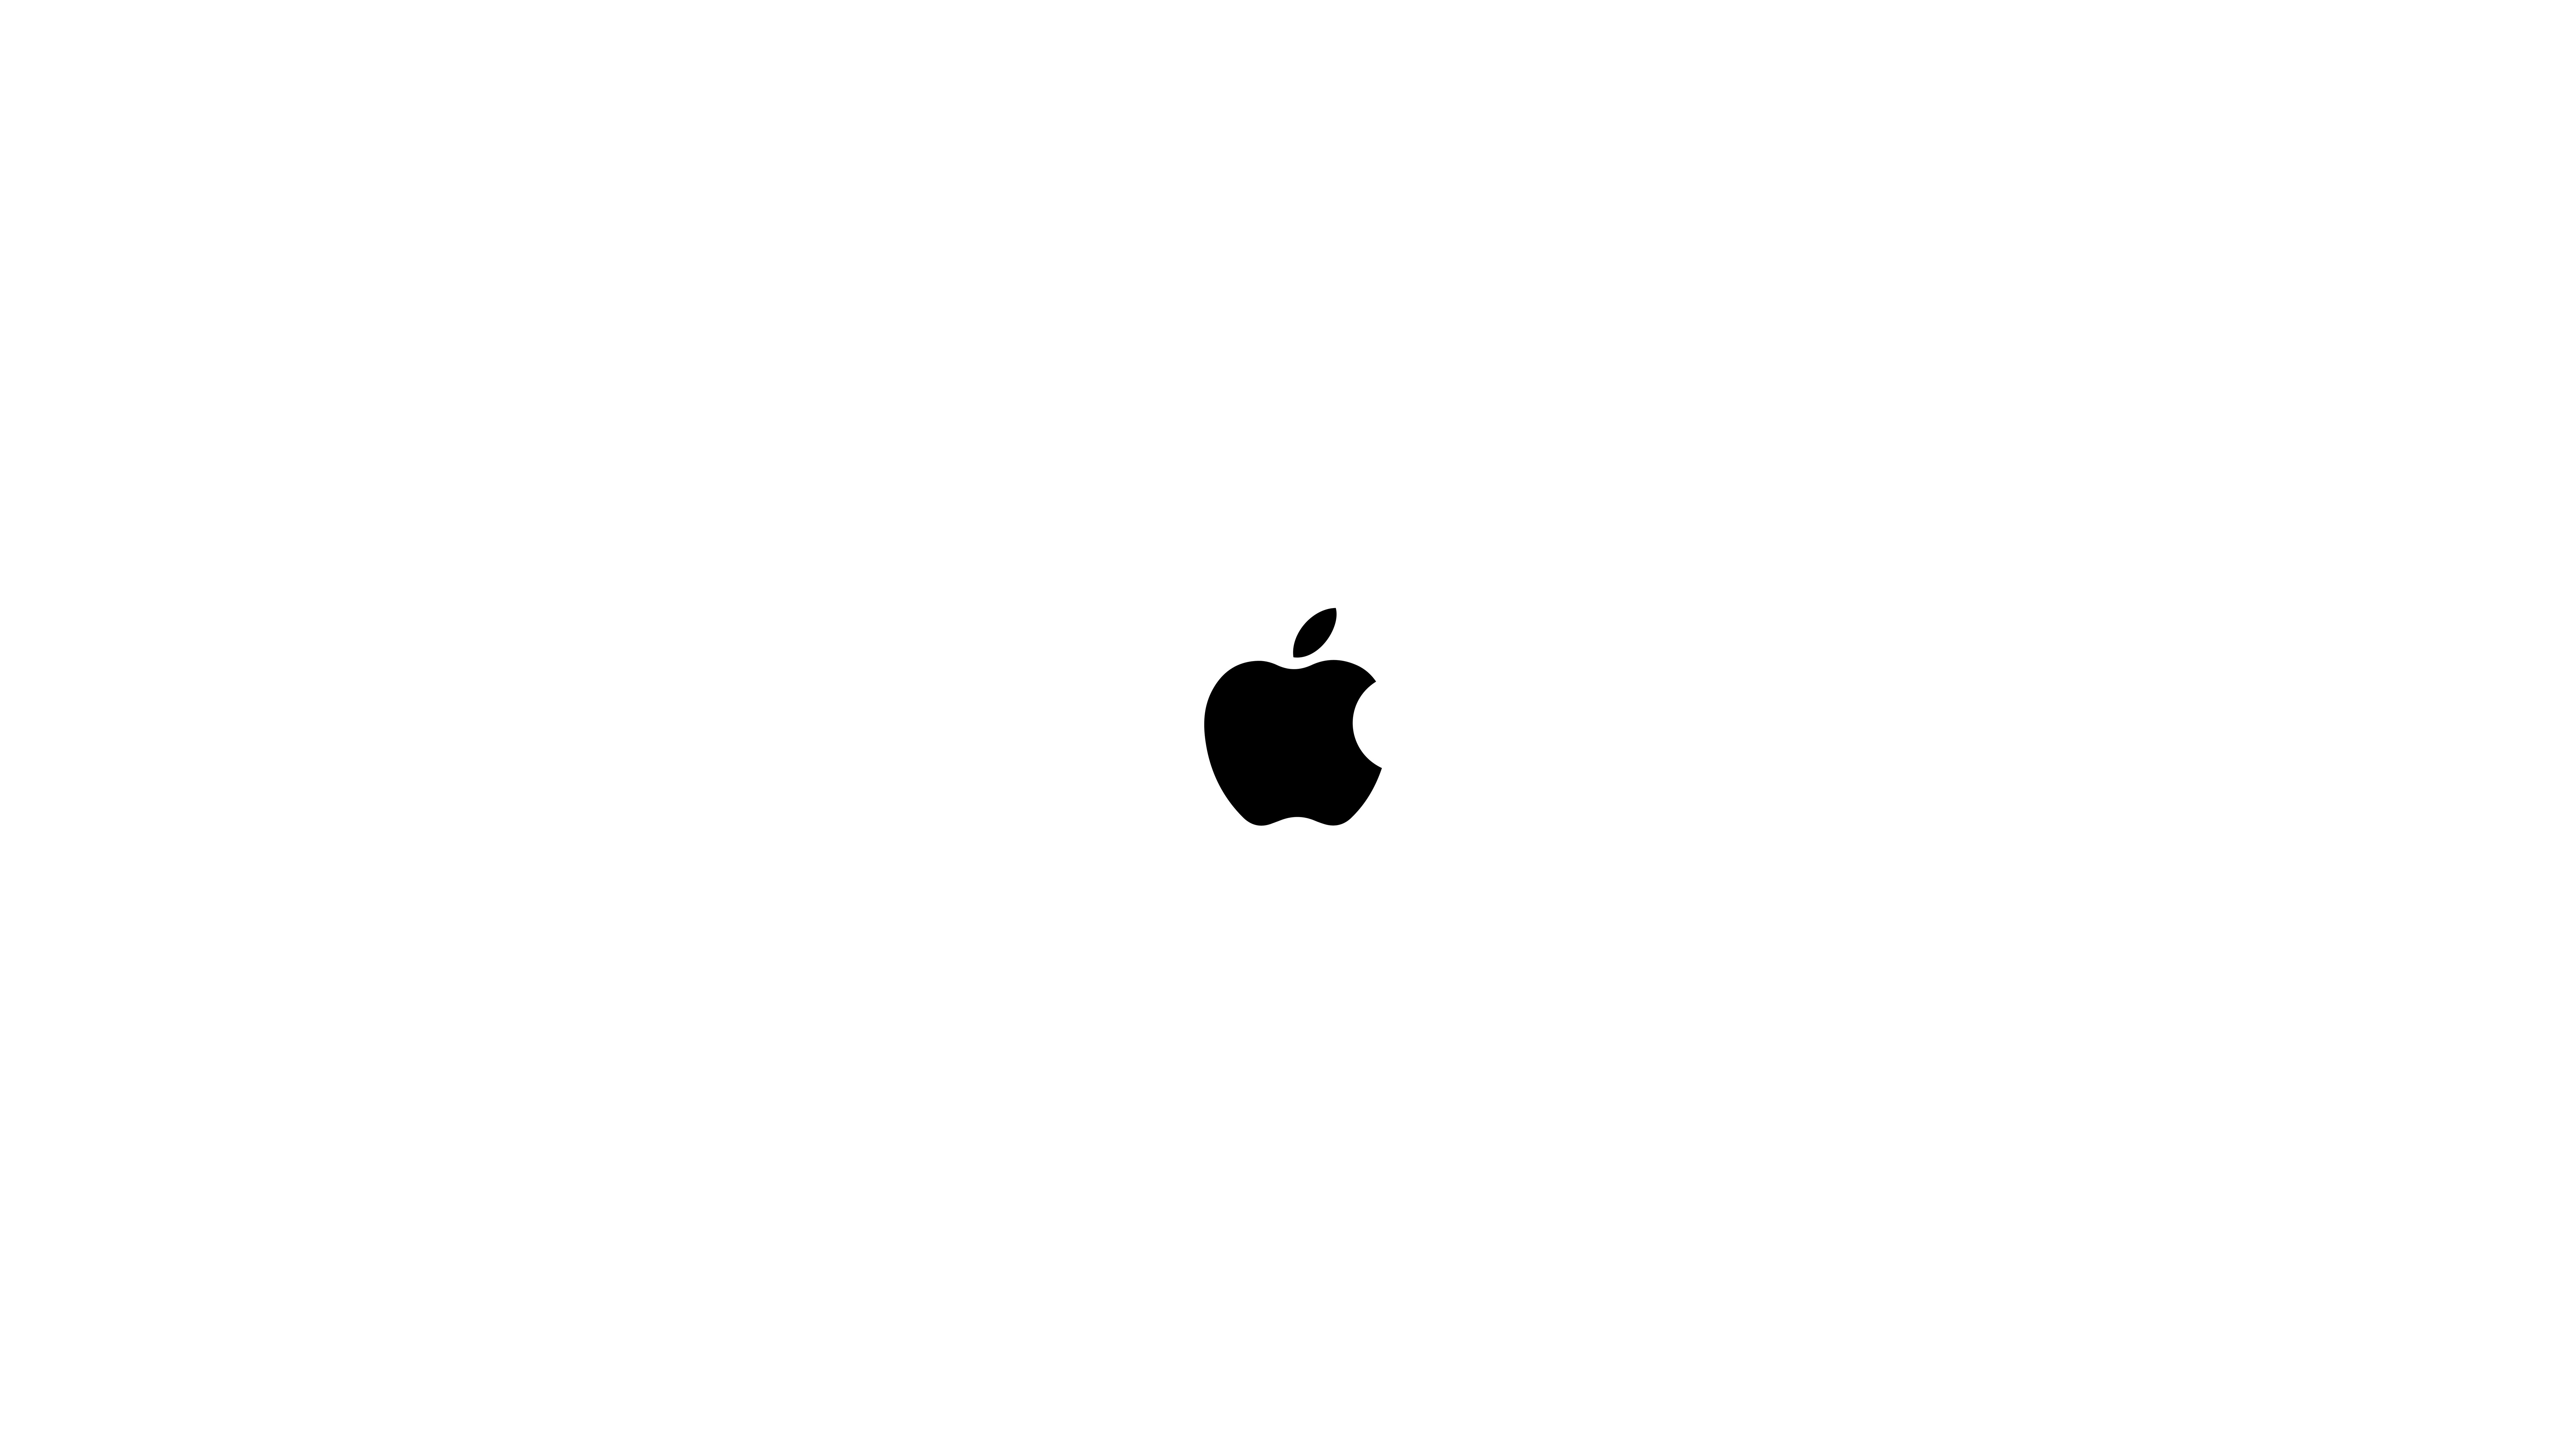 Ultra Hd Apple Logo Wallpaper 4K : Apple Logo Iphone Wallpaper Hd 4k